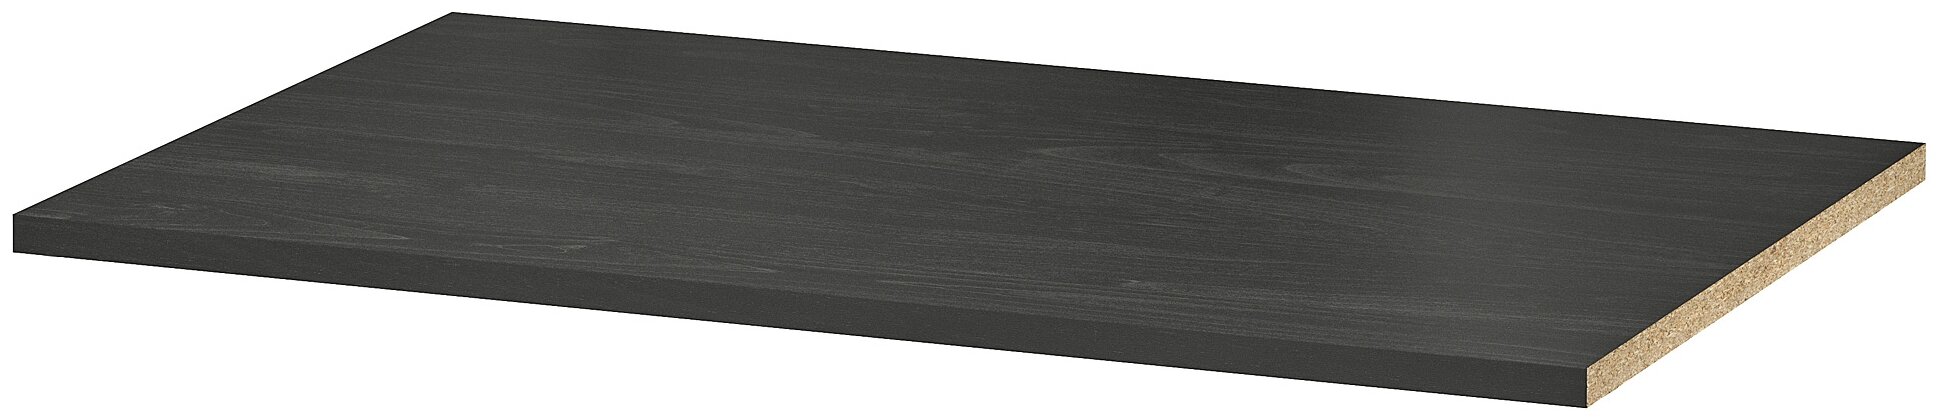 Полка ИКЕА РАККЕСТАД для шкафа, черно-коричневый